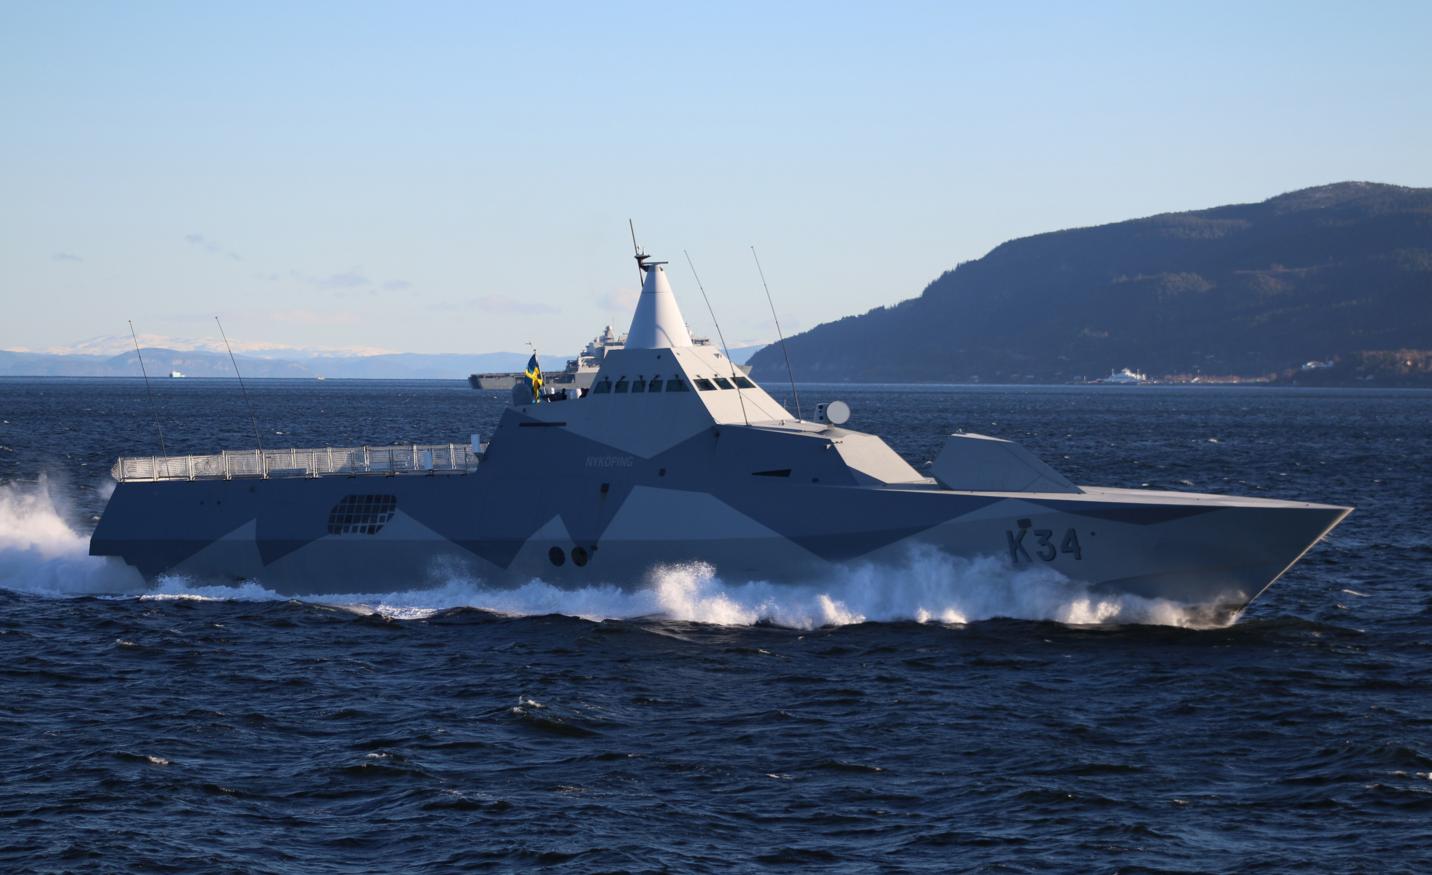 Шведский корвет HSwMS Nykping (K34), участвующий в учении  НАТО Trident Juncture 2018, фото сделано 31 октября 2018 года в норвежском фьорде Trondheim